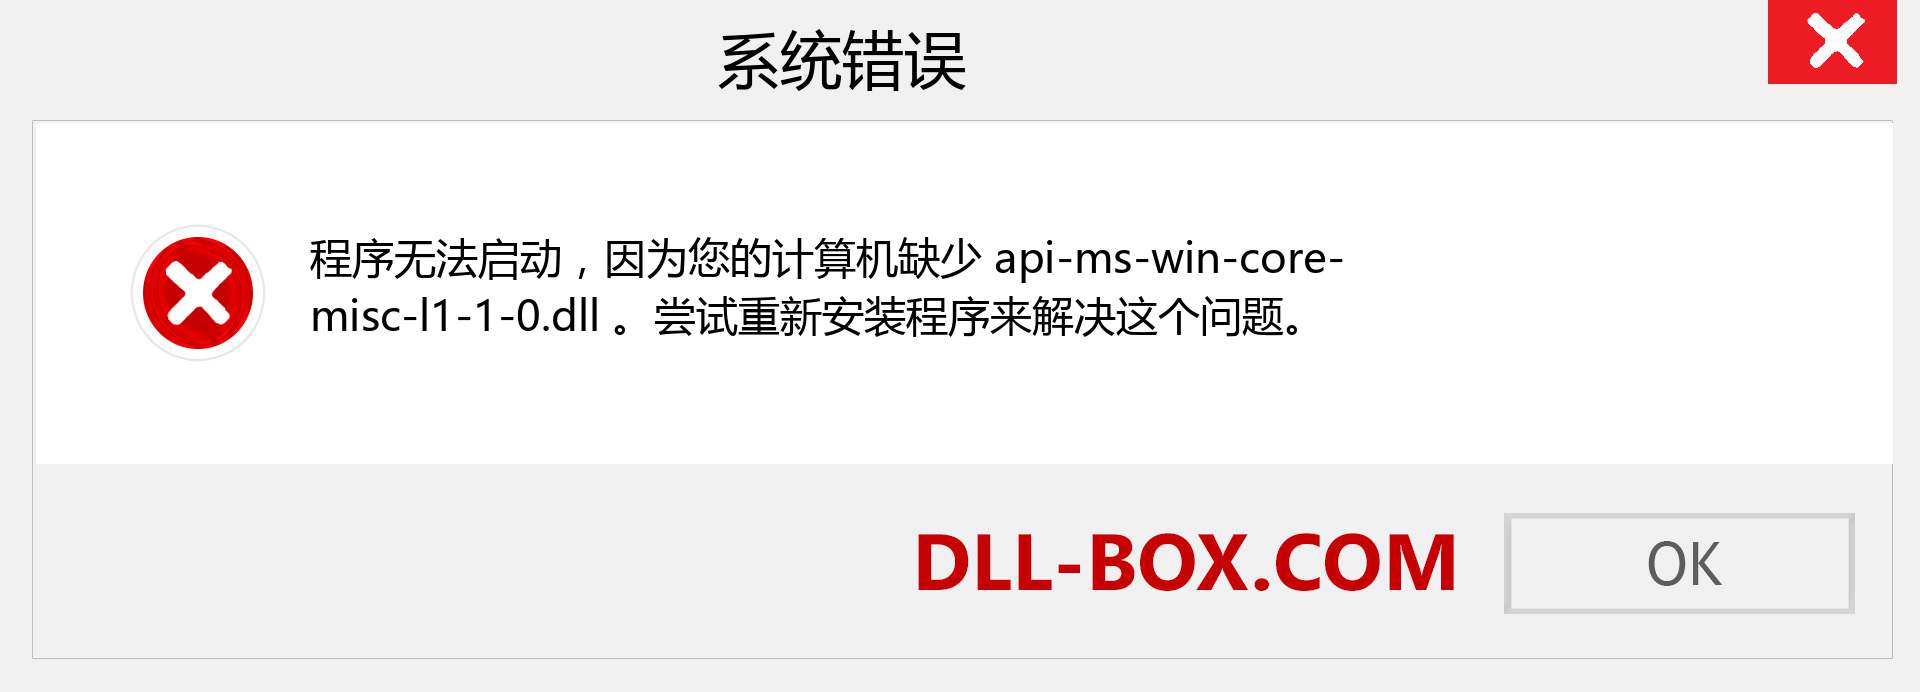 api-ms-win-core-misc-l1-1-0.dll 文件丢失？。 适用于 Windows 7、8、10 的下载 - 修复 Windows、照片、图像上的 api-ms-win-core-misc-l1-1-0 dll 丢失错误